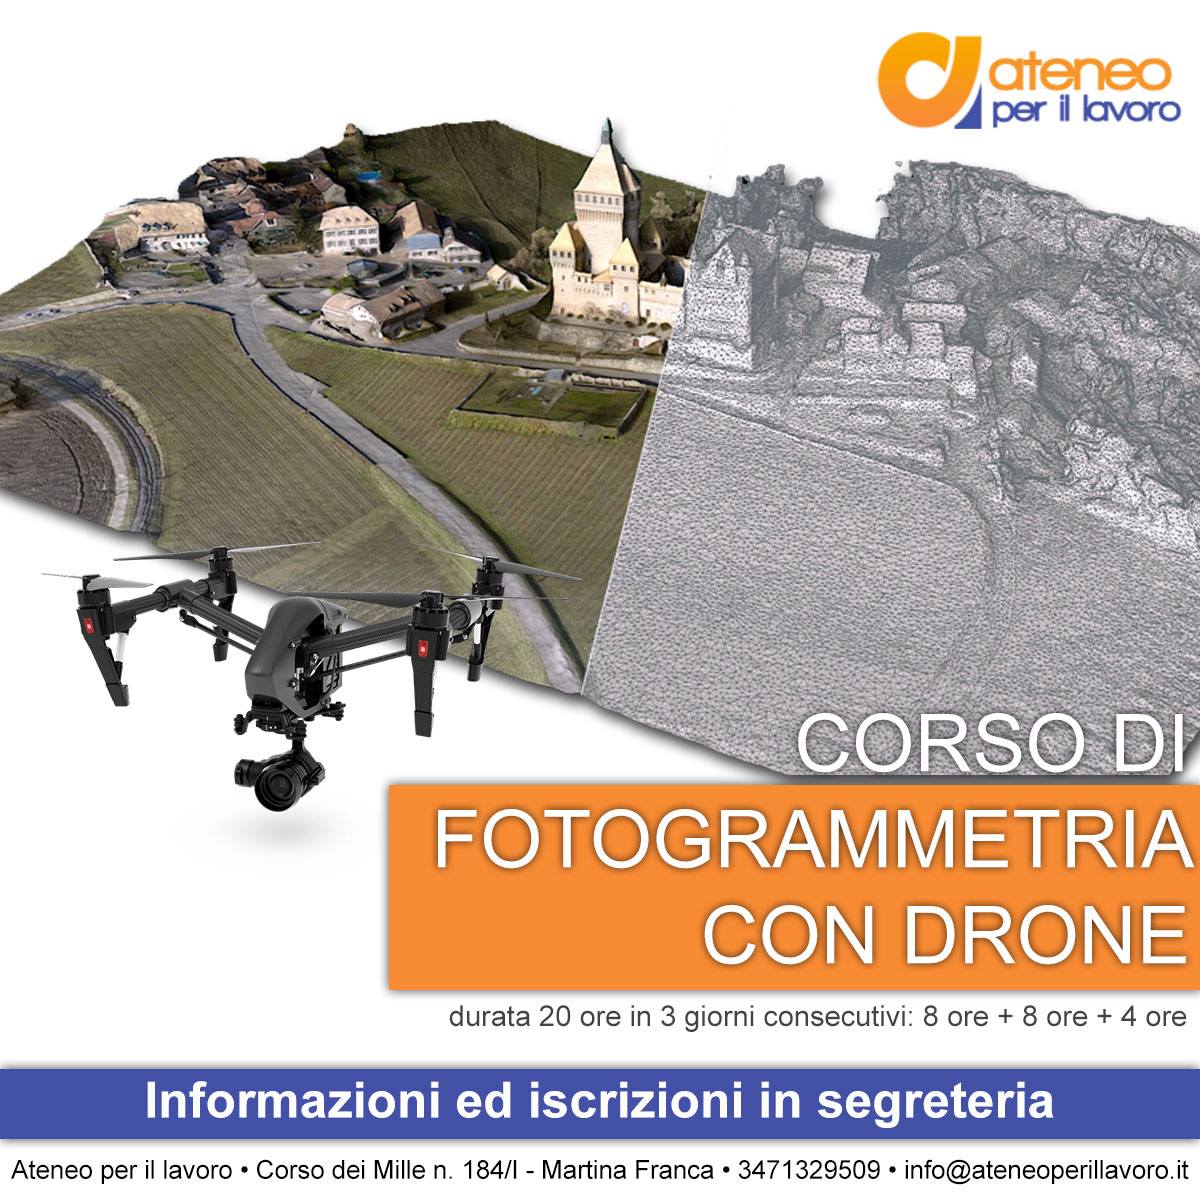 Corso di Fotogrammetria con drone: la tutela del territorio incontra le nuove tecnologie